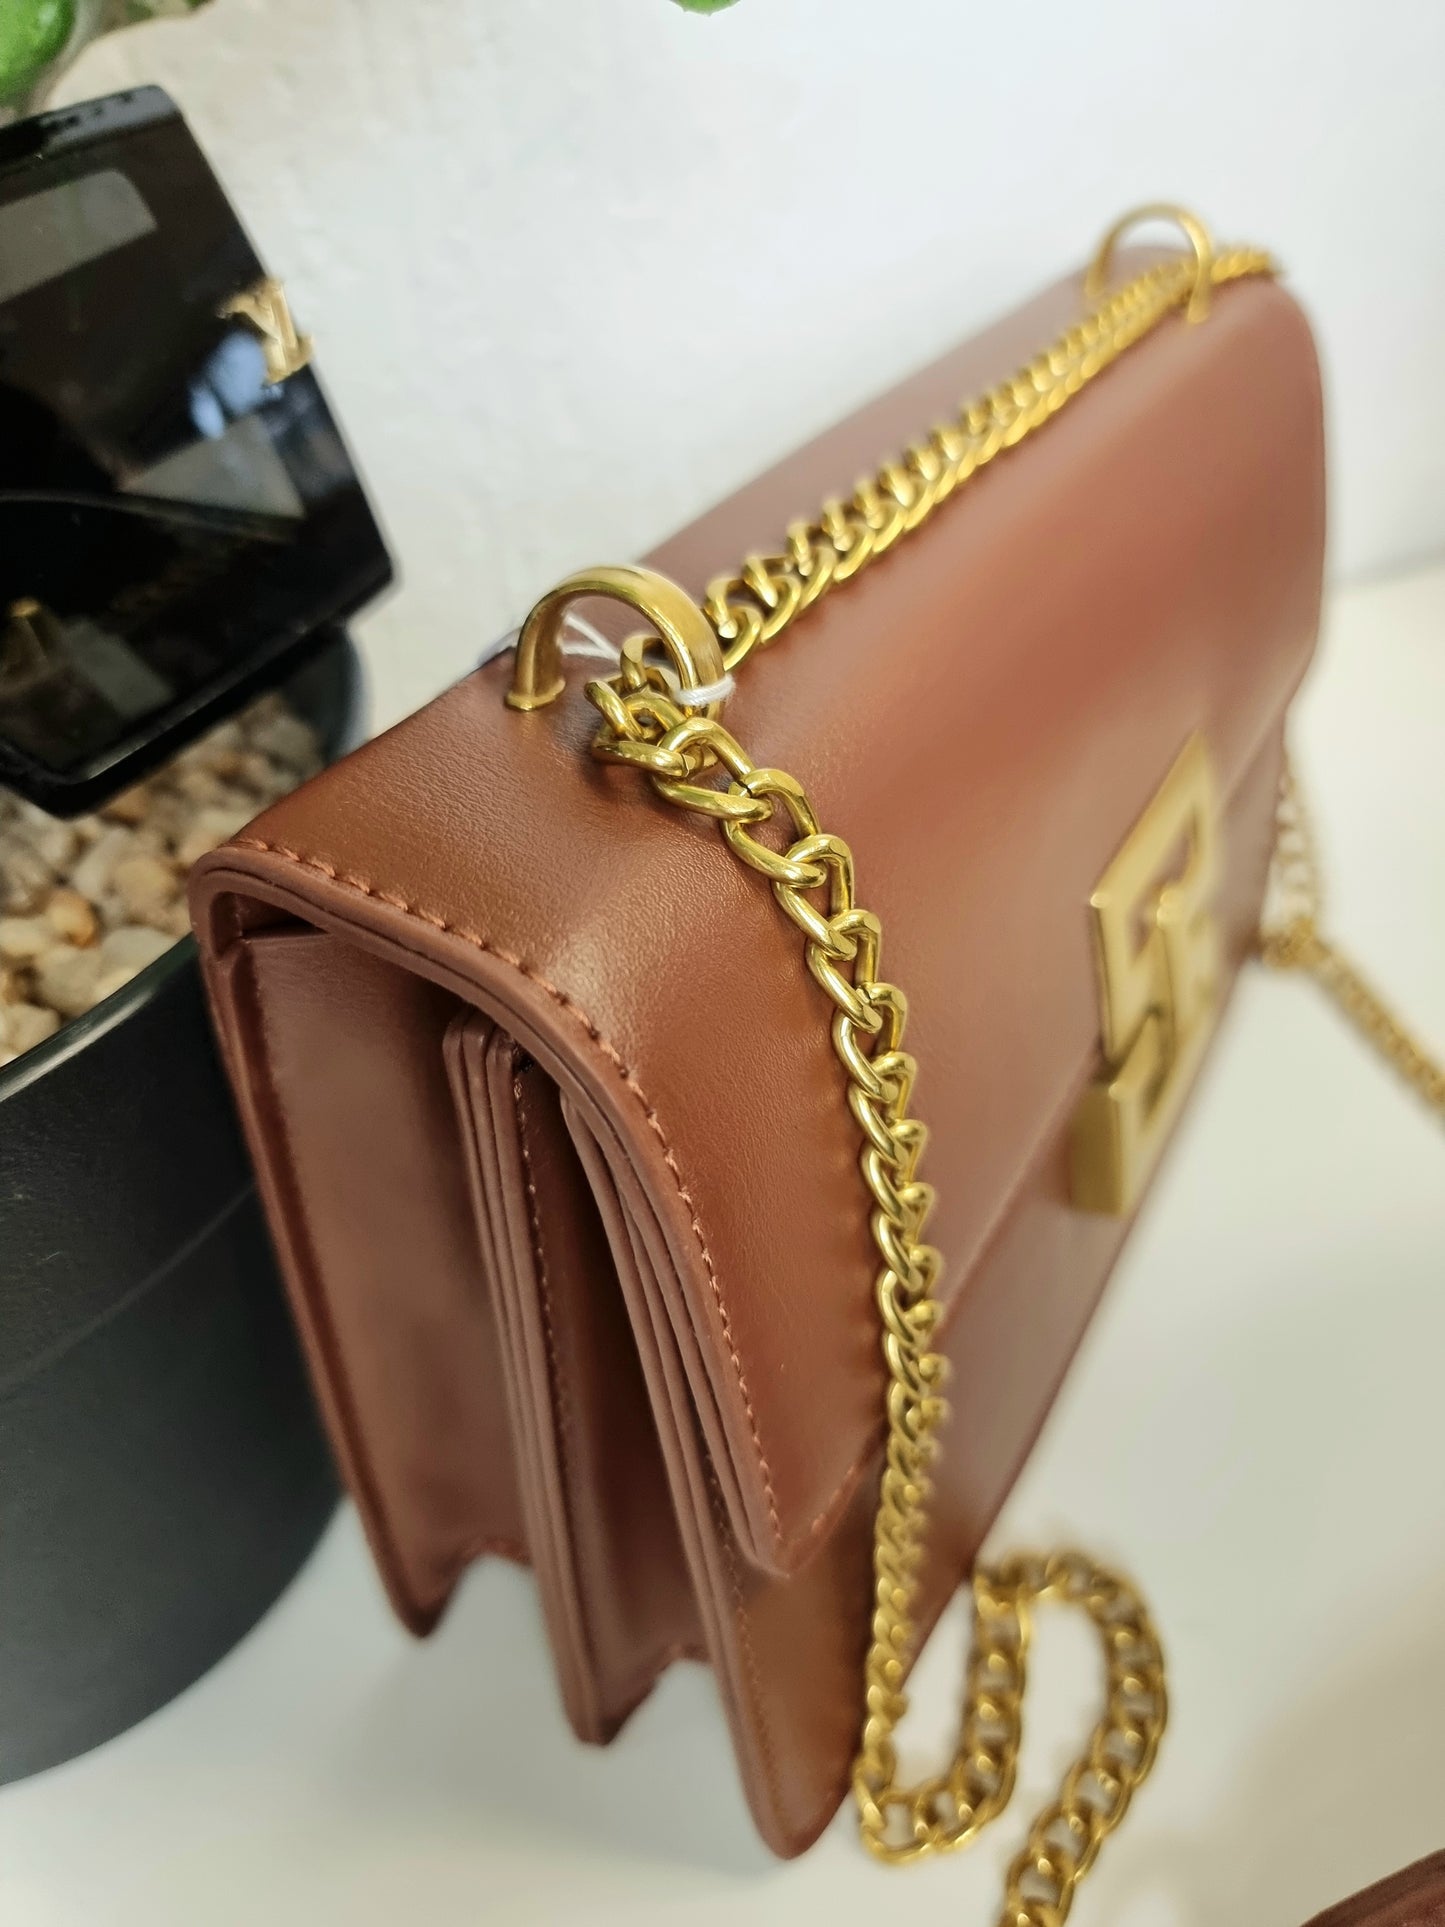 Edle Handtasche mit Goldkette in 2 verschiedenen Farben